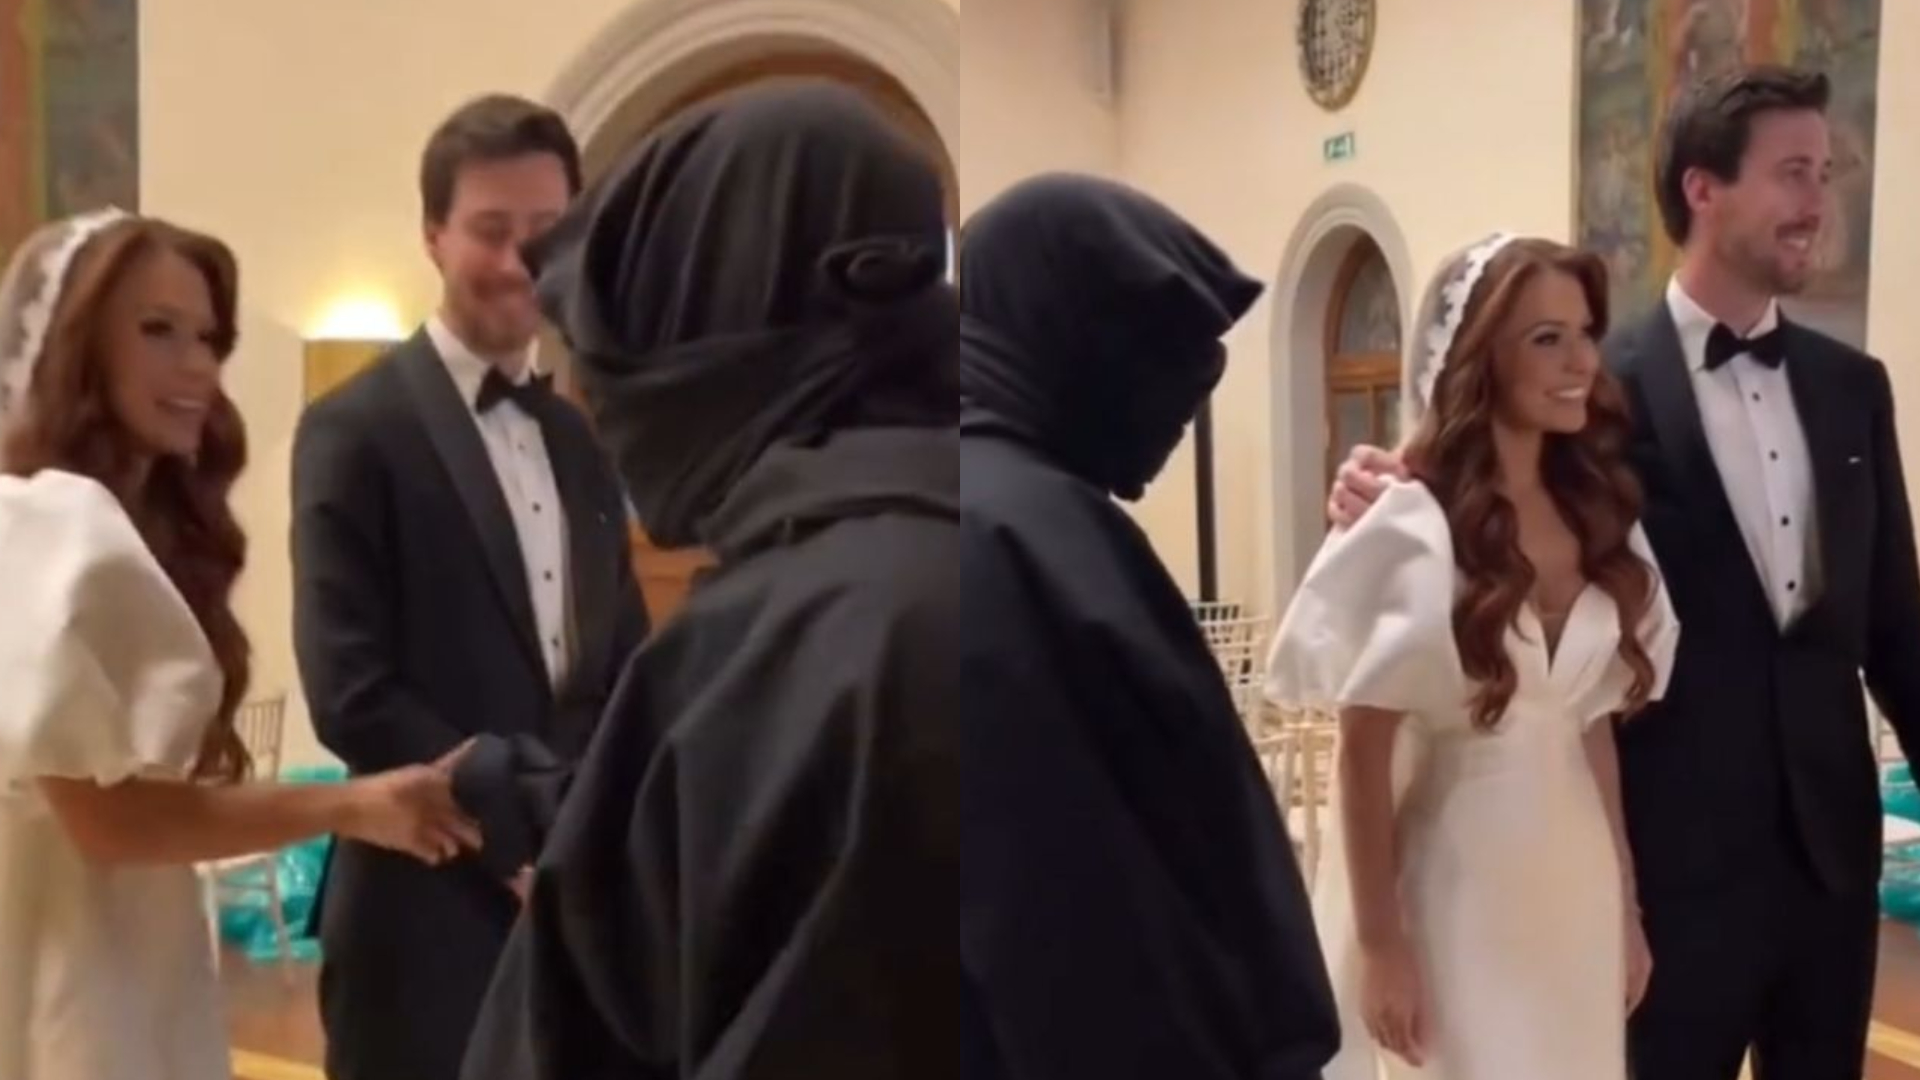 De capuz, Kanye West “invade” casamento na Itália, fala com noivos e vídeo viraliza nas redes; assista